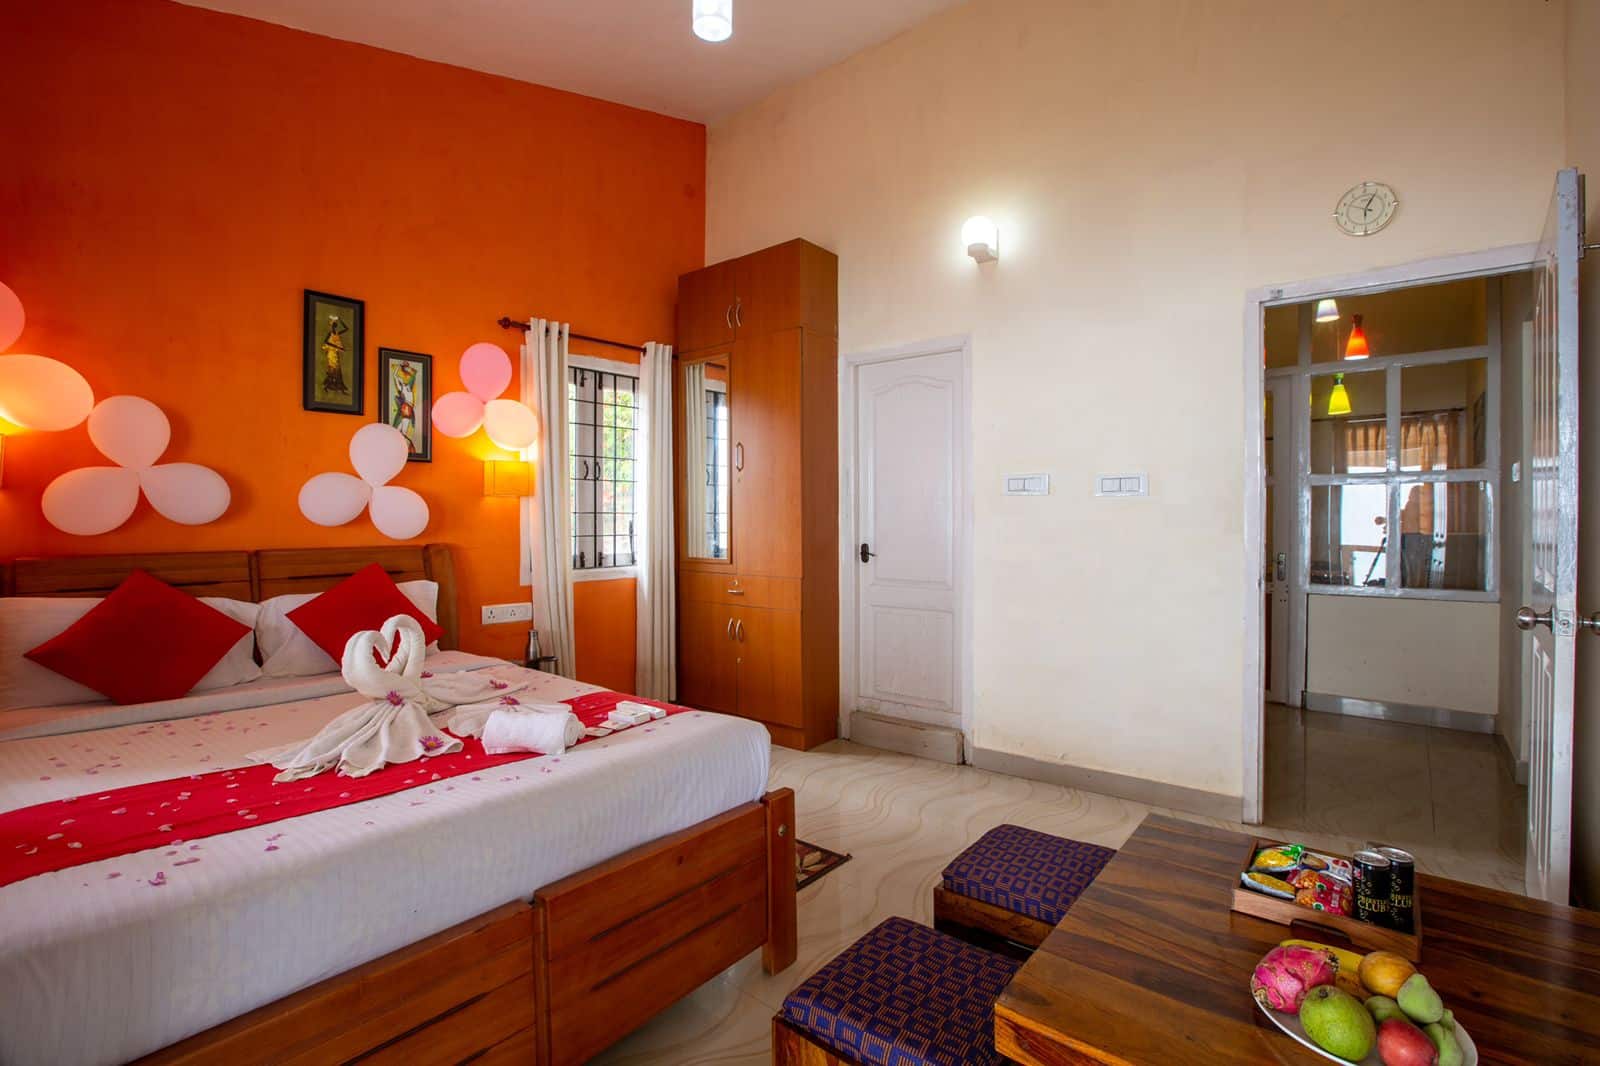 Best Rooms in Kodaikanal | Mountain View Rooms in Kodaikanal | Syamantac Villa